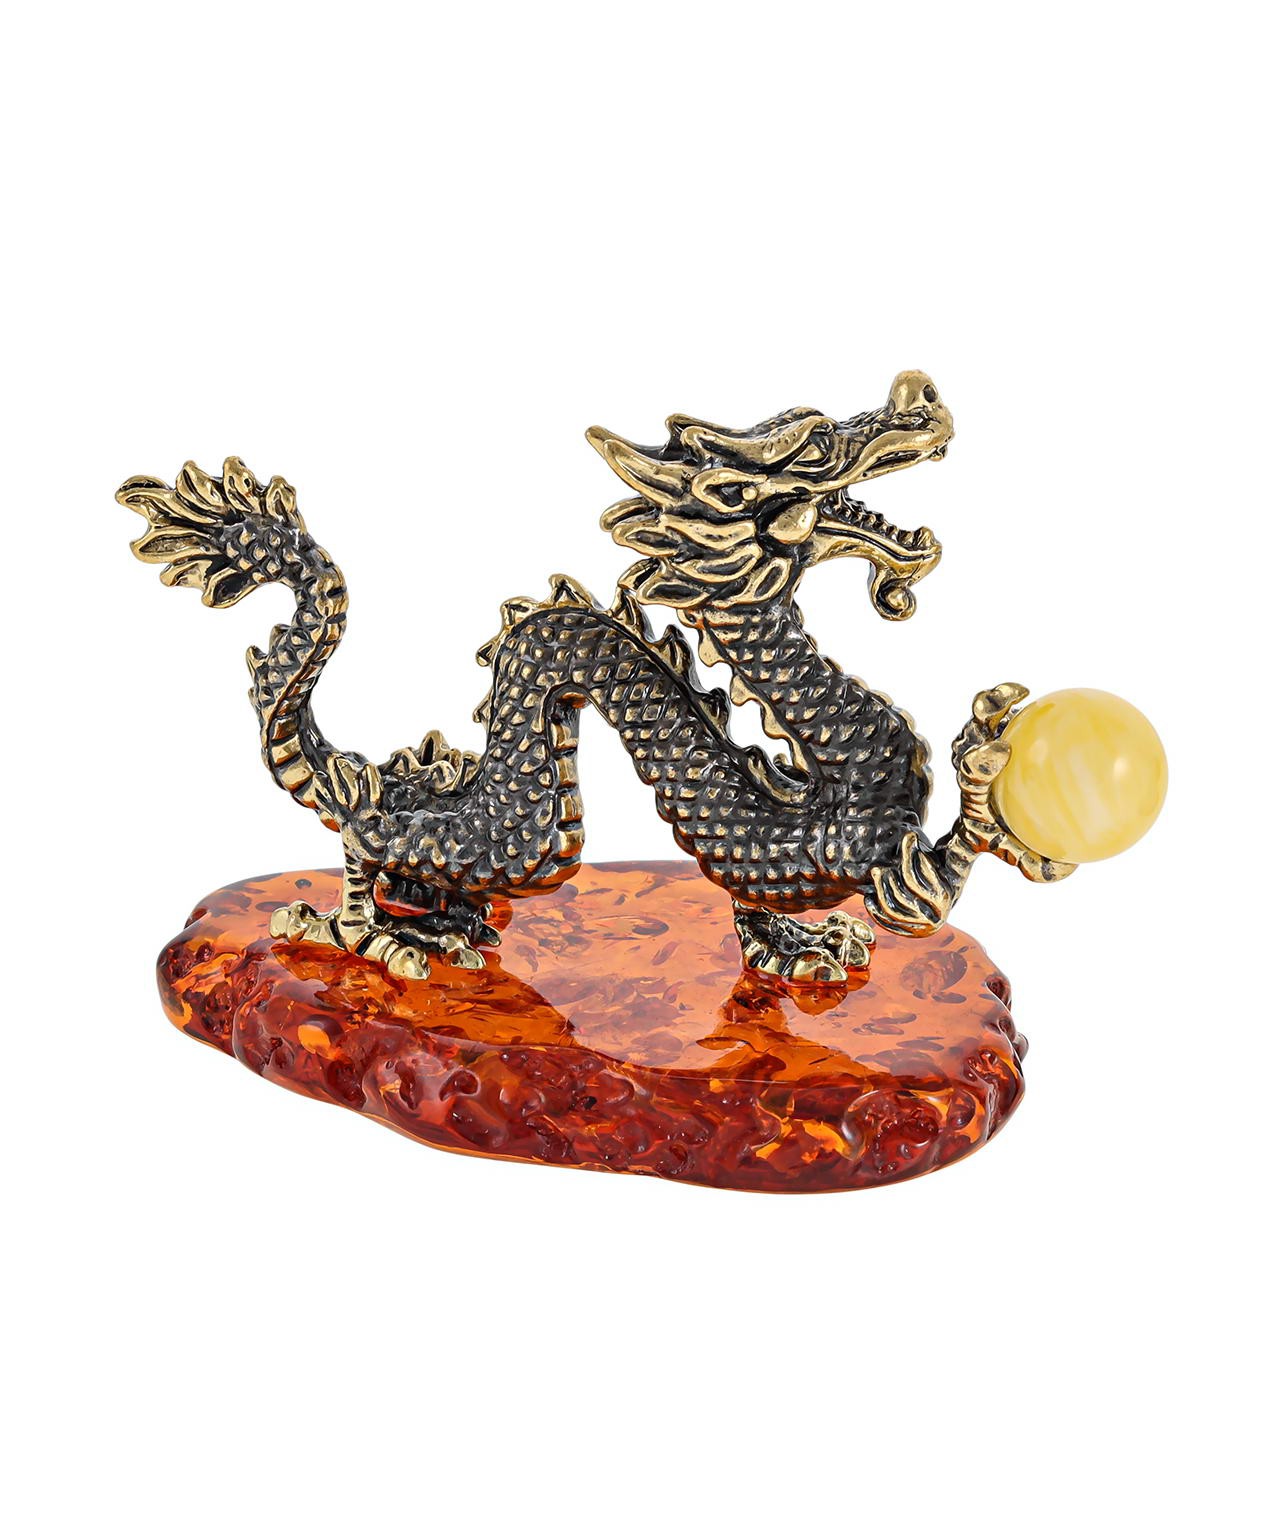 Сувенир дракон из Китая